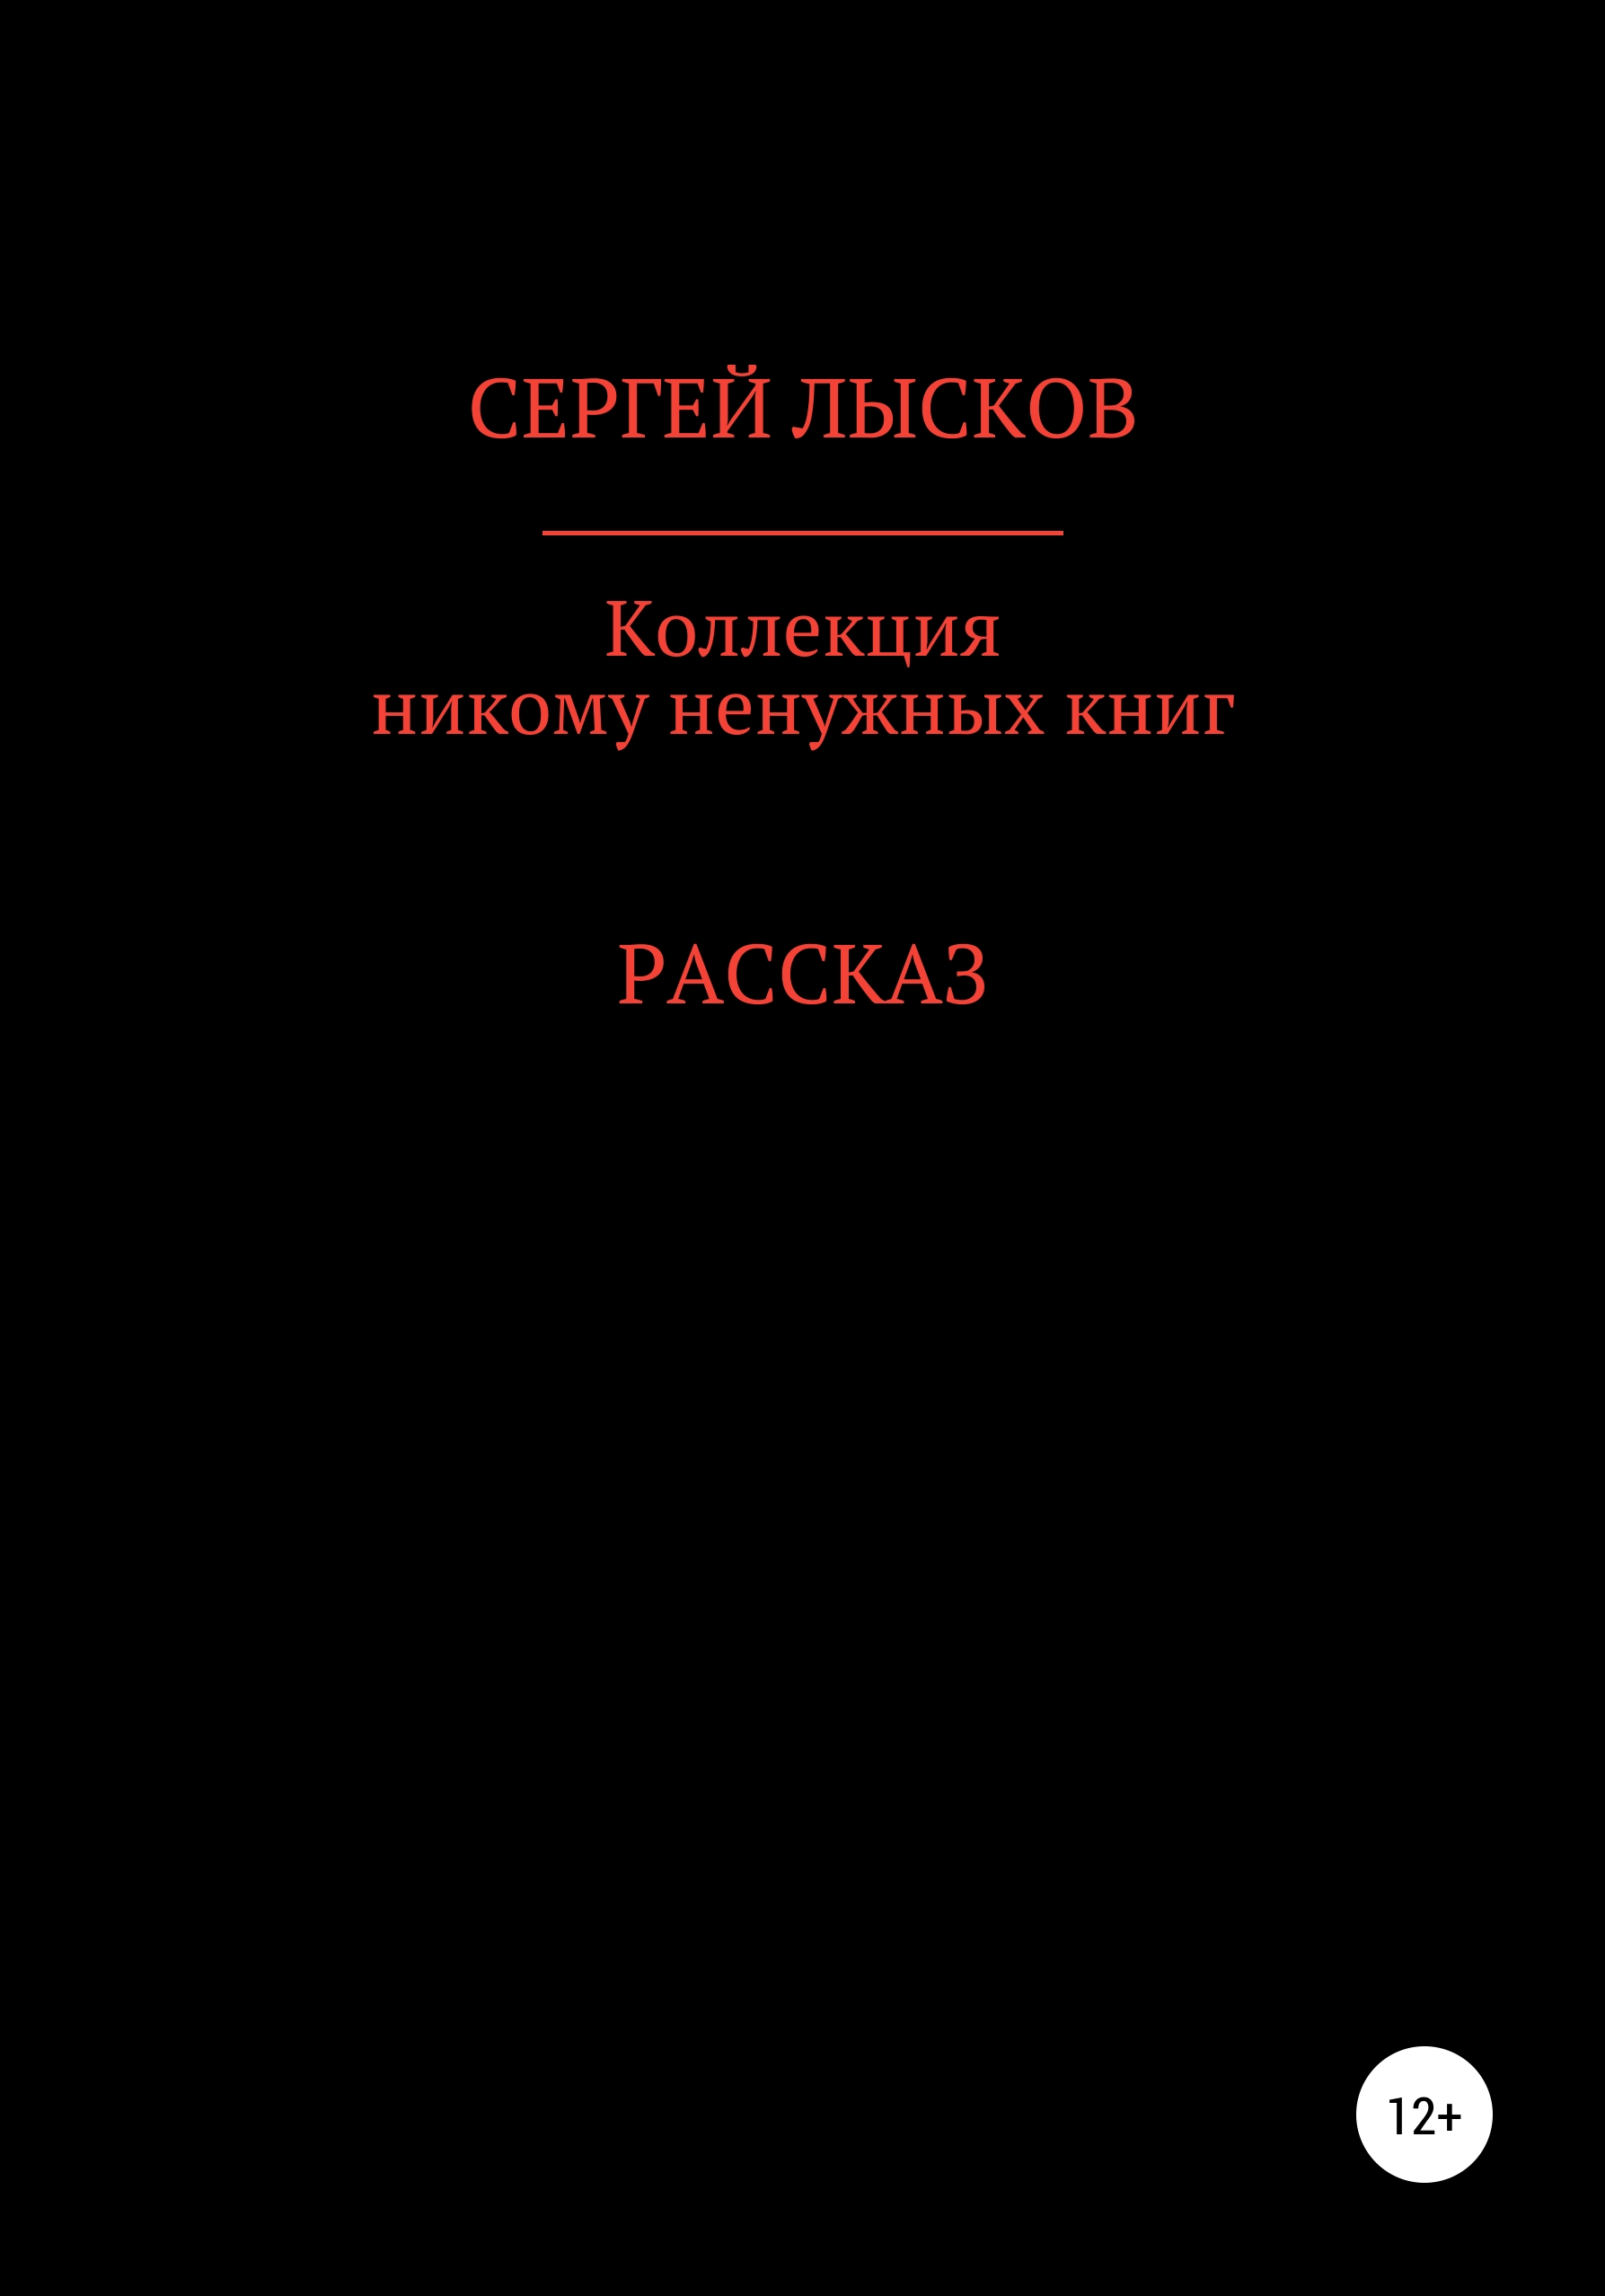 Коллекция никому ненужных книг – Сергей Геннадьевич Лысков